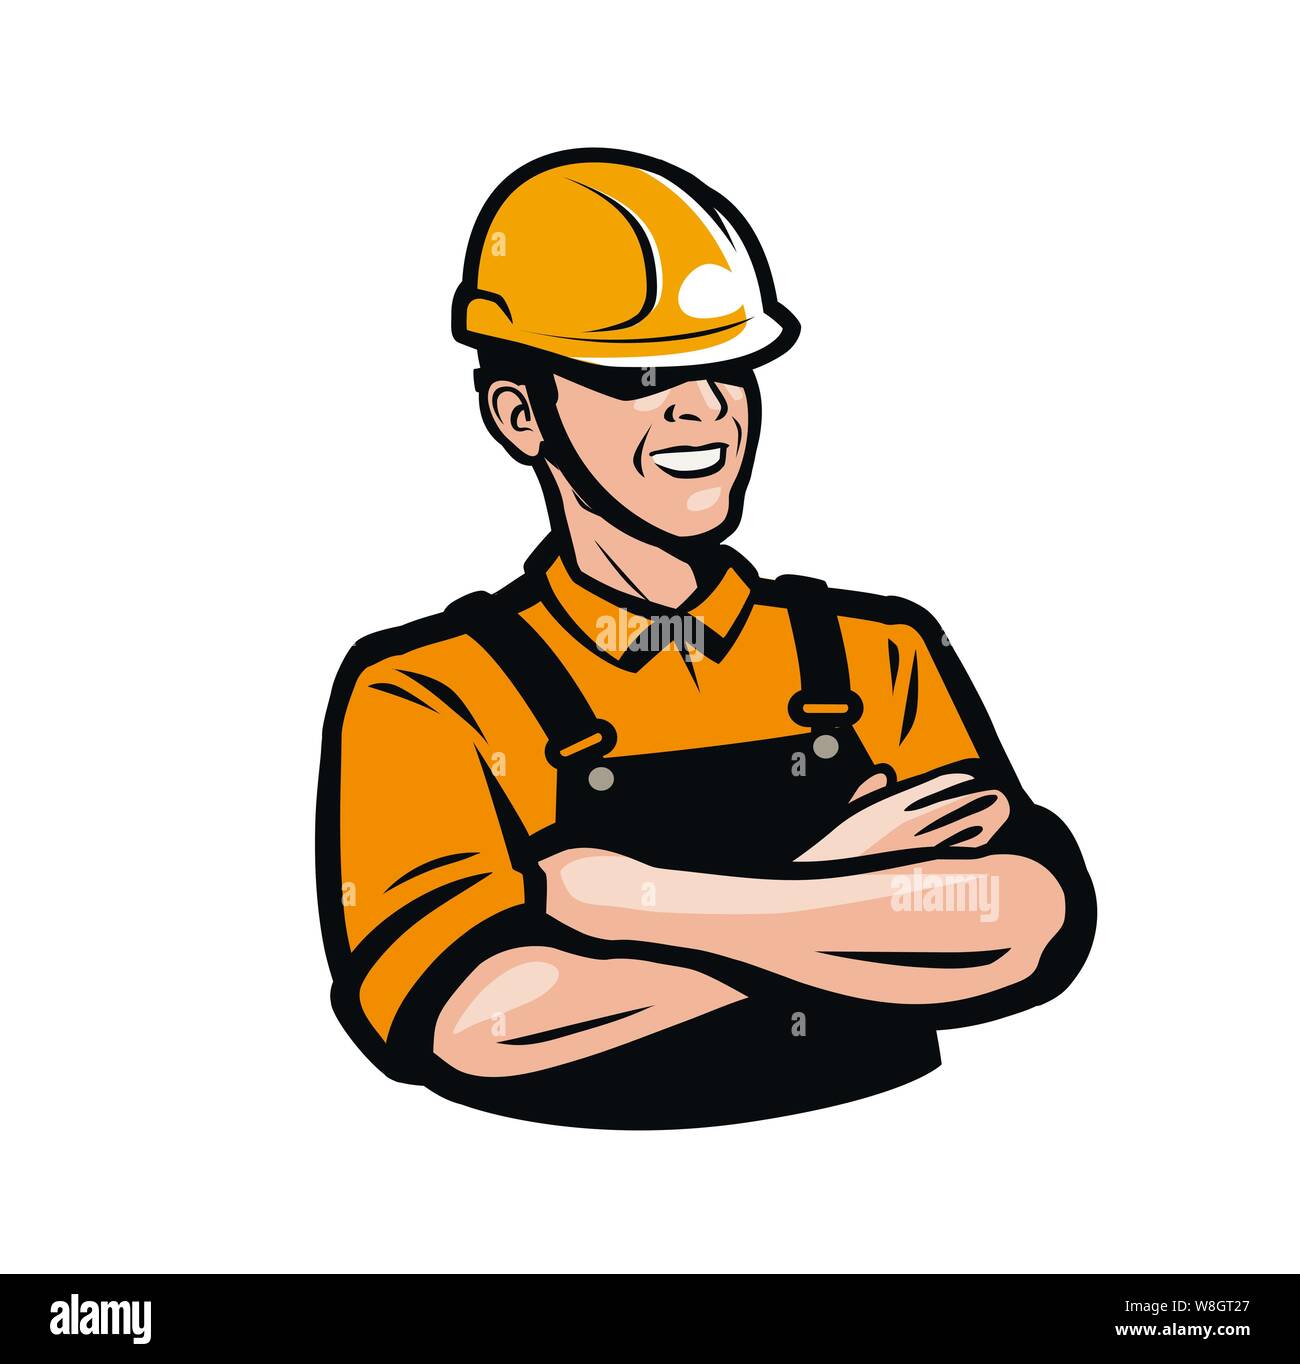 Builder or worker in construction helmet. Repair, fix, industry logo. Vector illustration Stock Vector